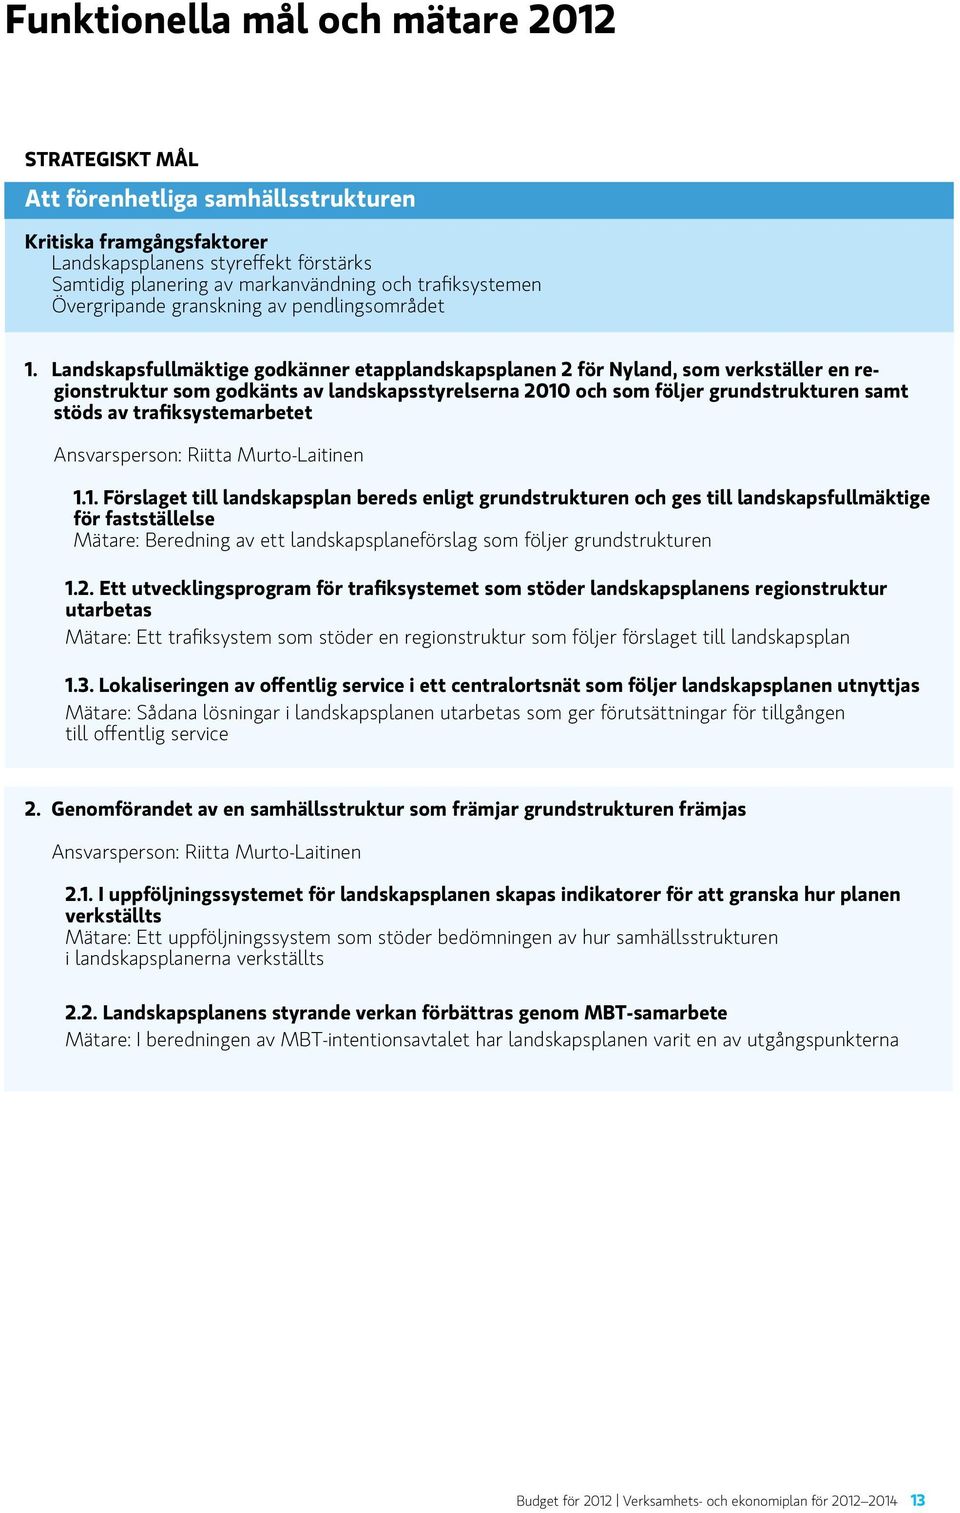 Landskapsfullmäktige godkänner etapplandskapsplanen 2 för Nyland, som verkställer en regionstruktur som godkänts av landskapsstyrelserna 2010 och som följer grundstrukturen samt stöds av